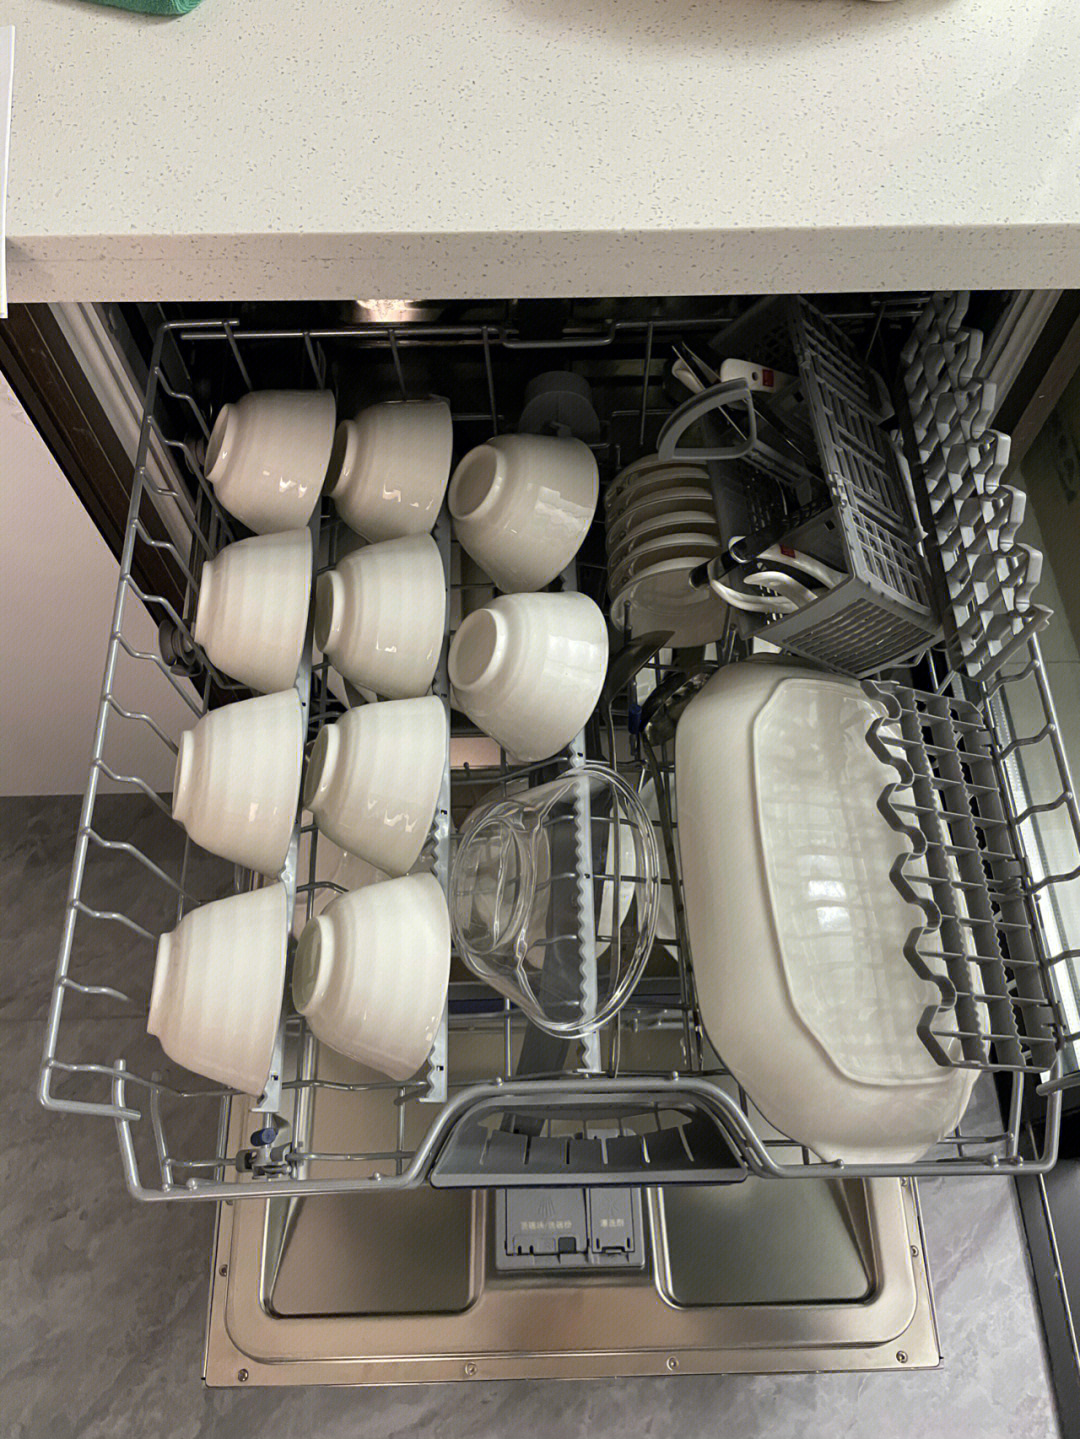 洗碗机安装示意图图片